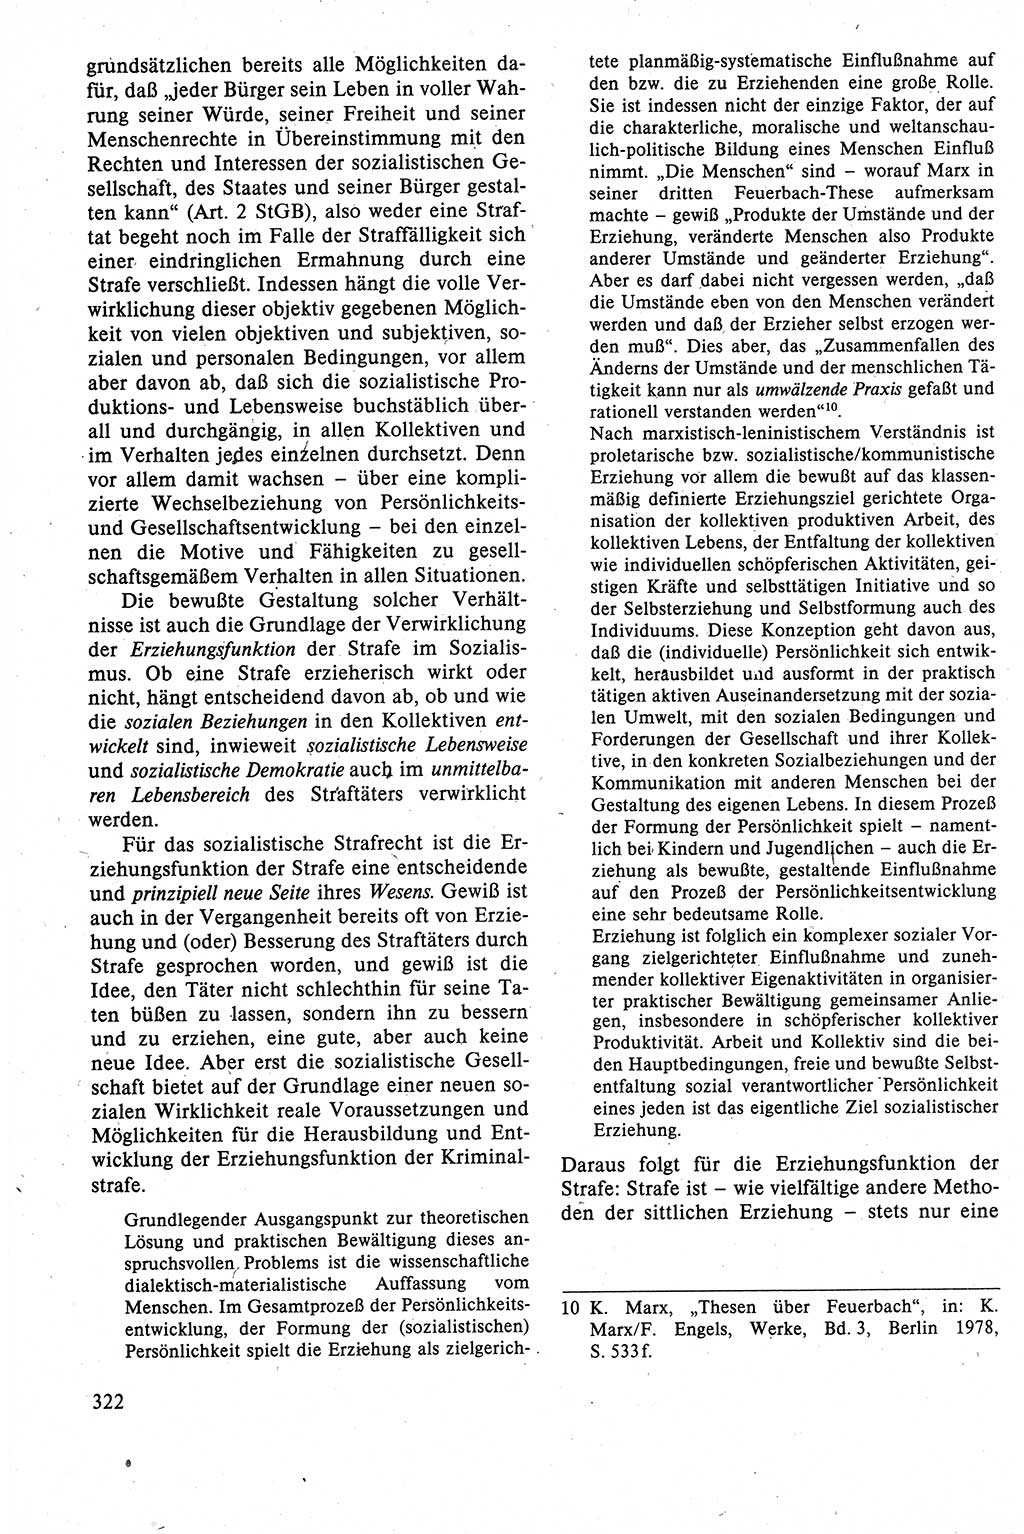 Strafrecht der DDR (Deutsche Demokratische Republik), Lehrbuch 1988, Seite 322 (Strafr. DDR Lb. 1988, S. 322)